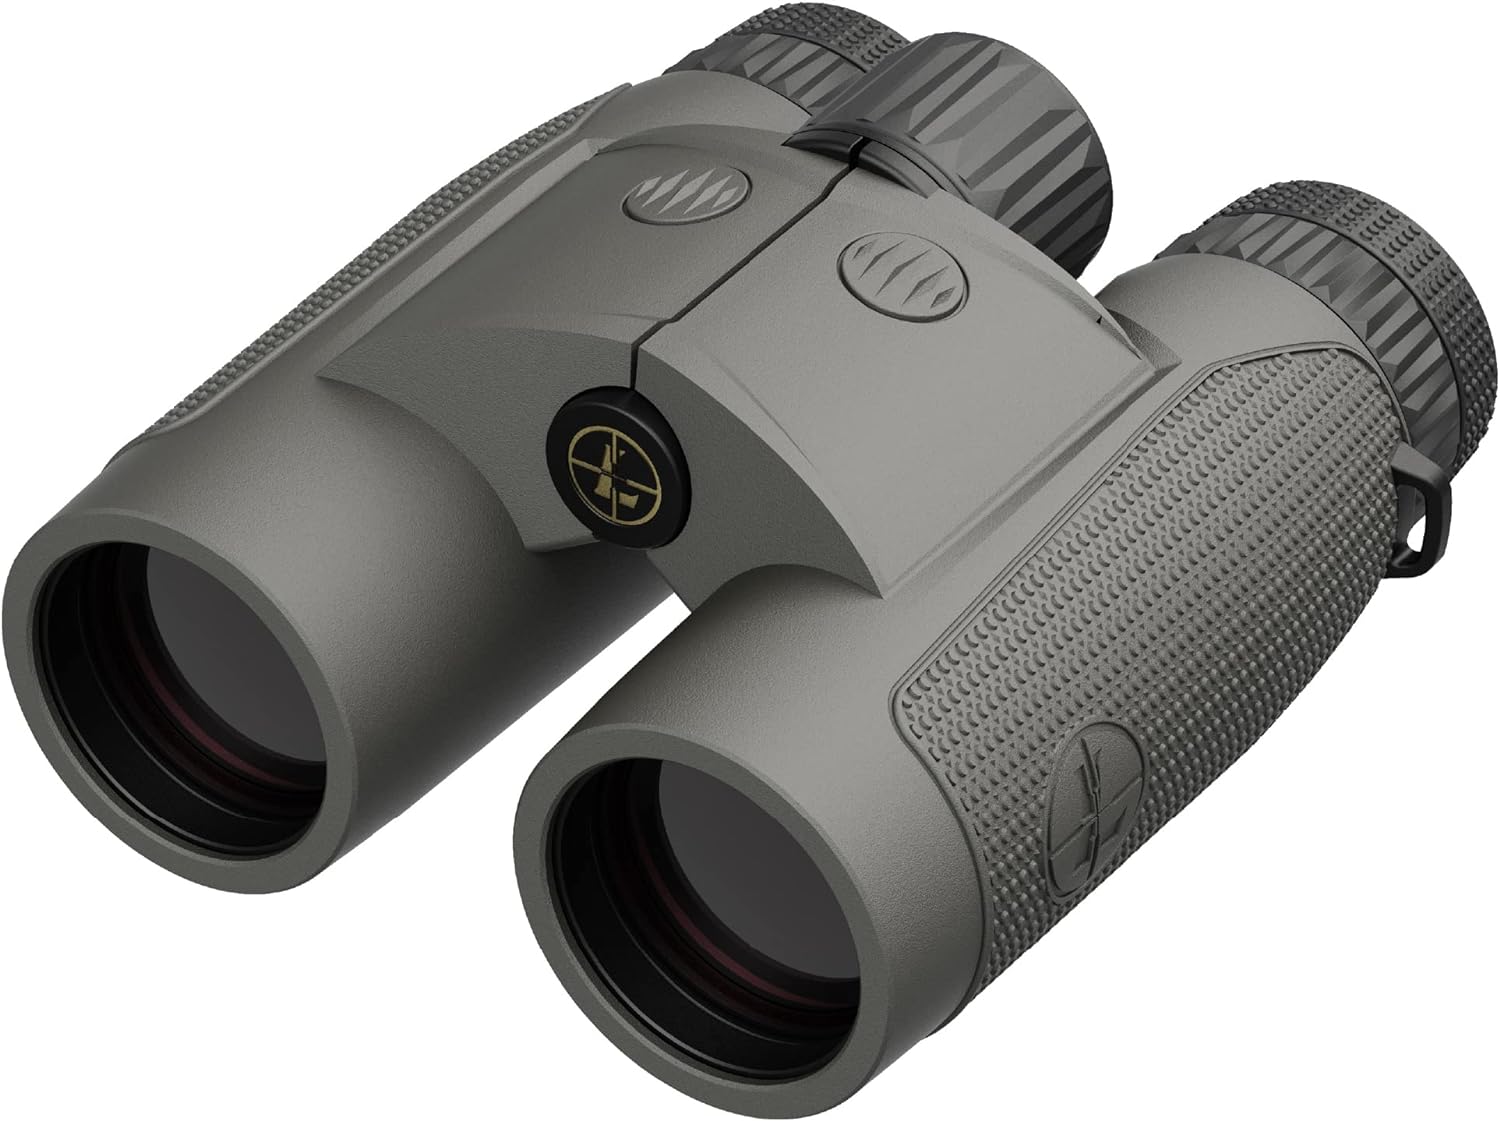 Leupold BX-4 Range HD TBR/W 10x42mm Range-Finding Binocular Shadow Gray (182883) - Leupold BX-4 Range HD TBR/W Binocular Review